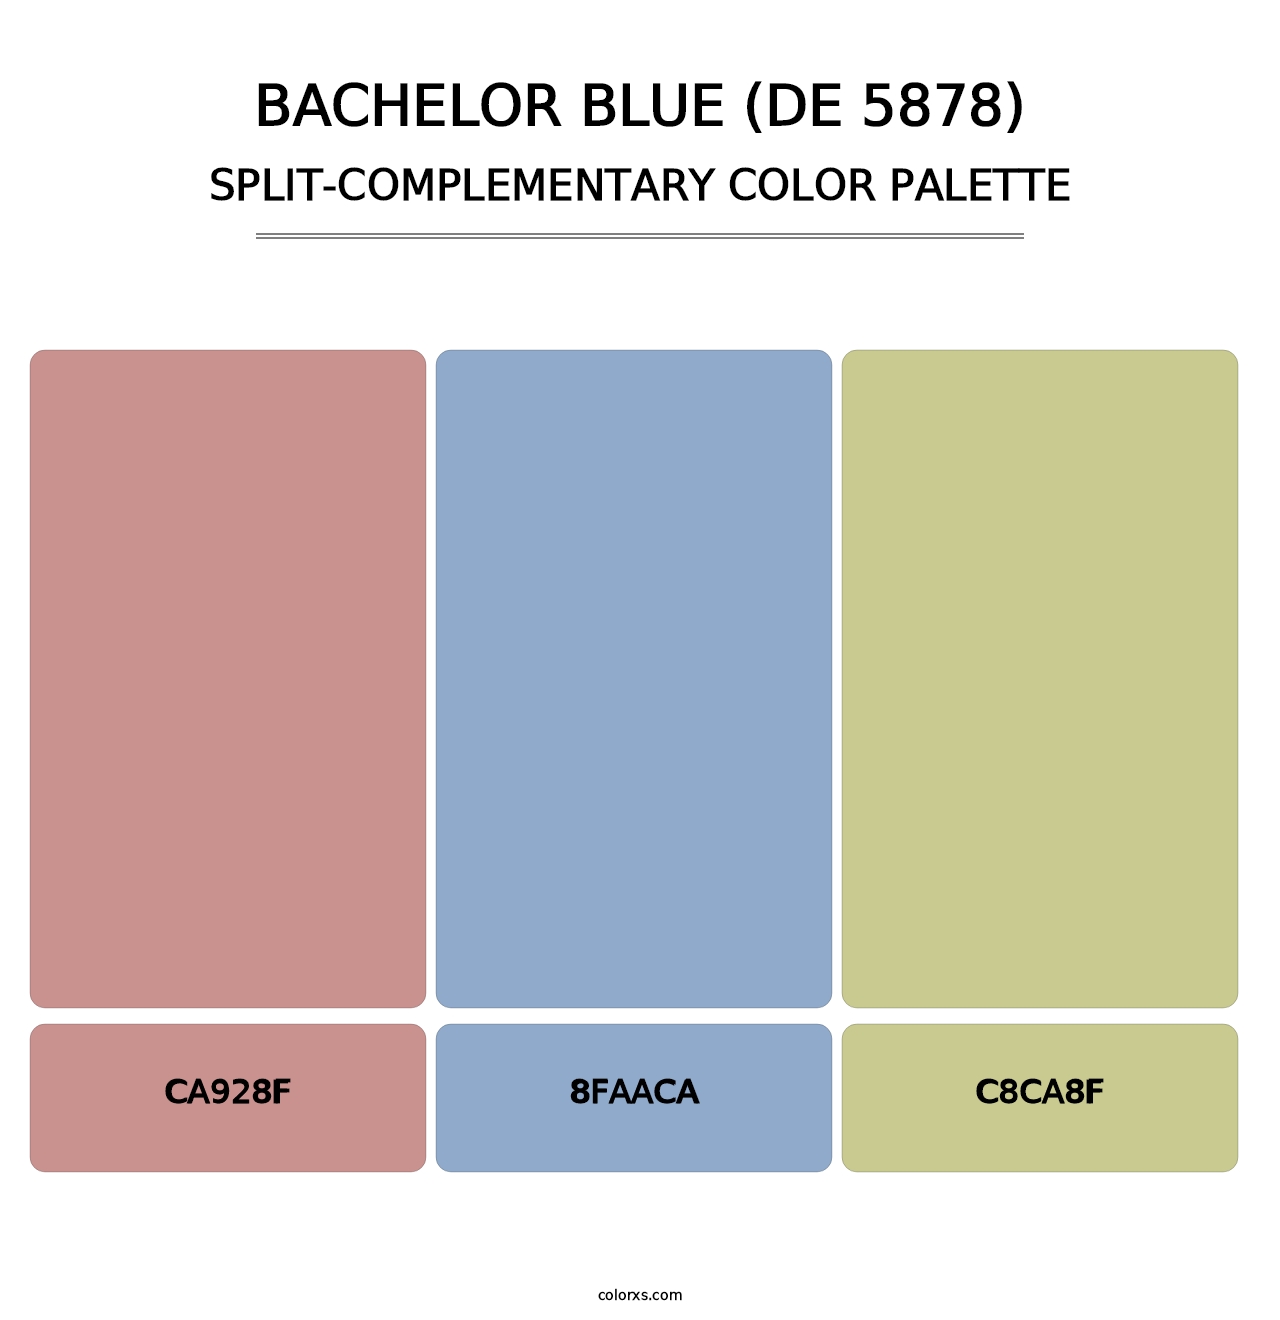 Bachelor Blue (DE 5878) - Split-Complementary Color Palette